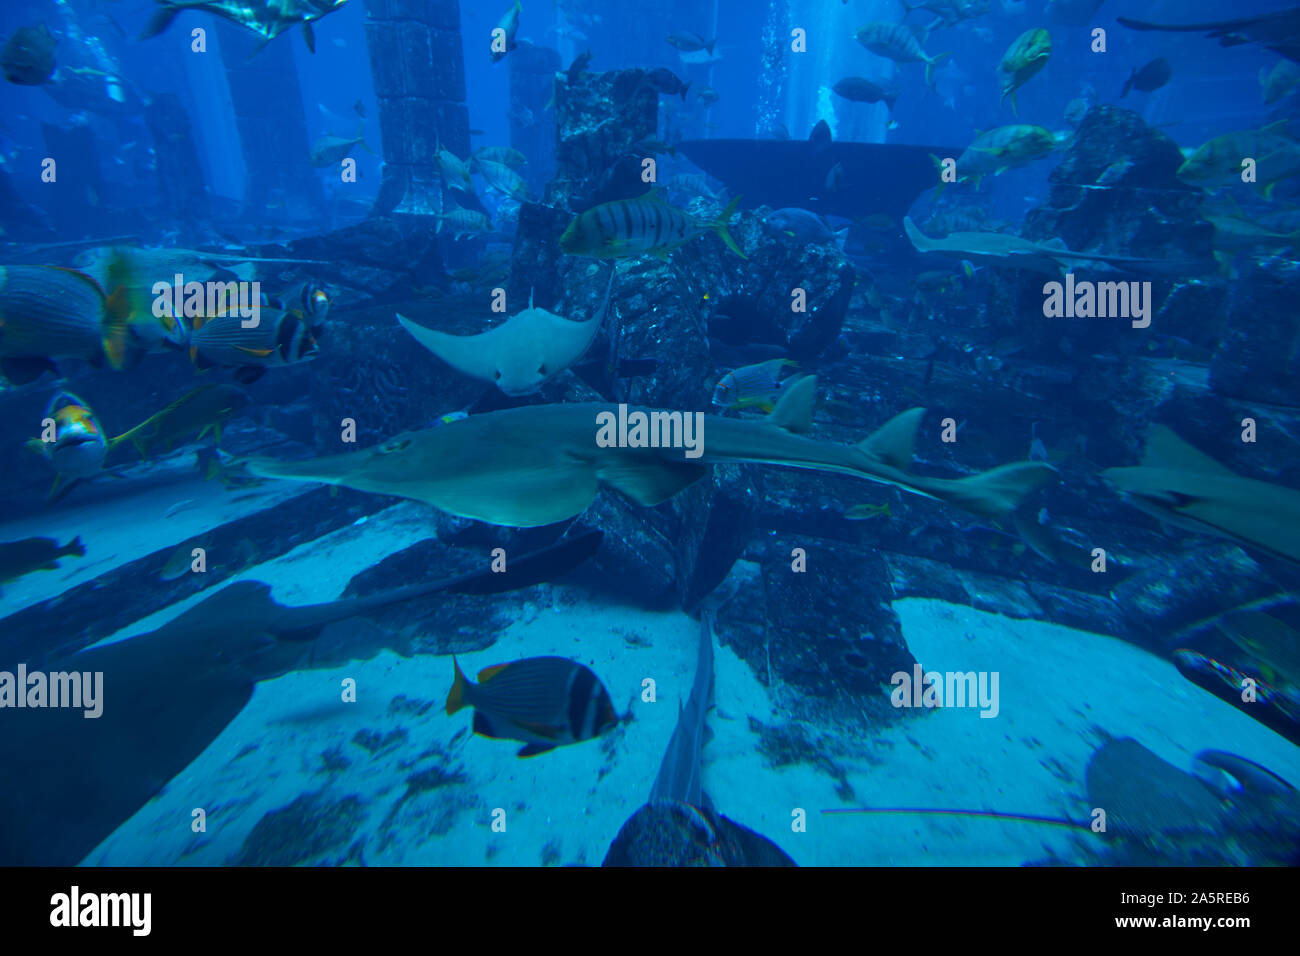 Aquarium and underwater Zoo at Atlantis Palm, Dubai, United Arab Emirates Stock Photo